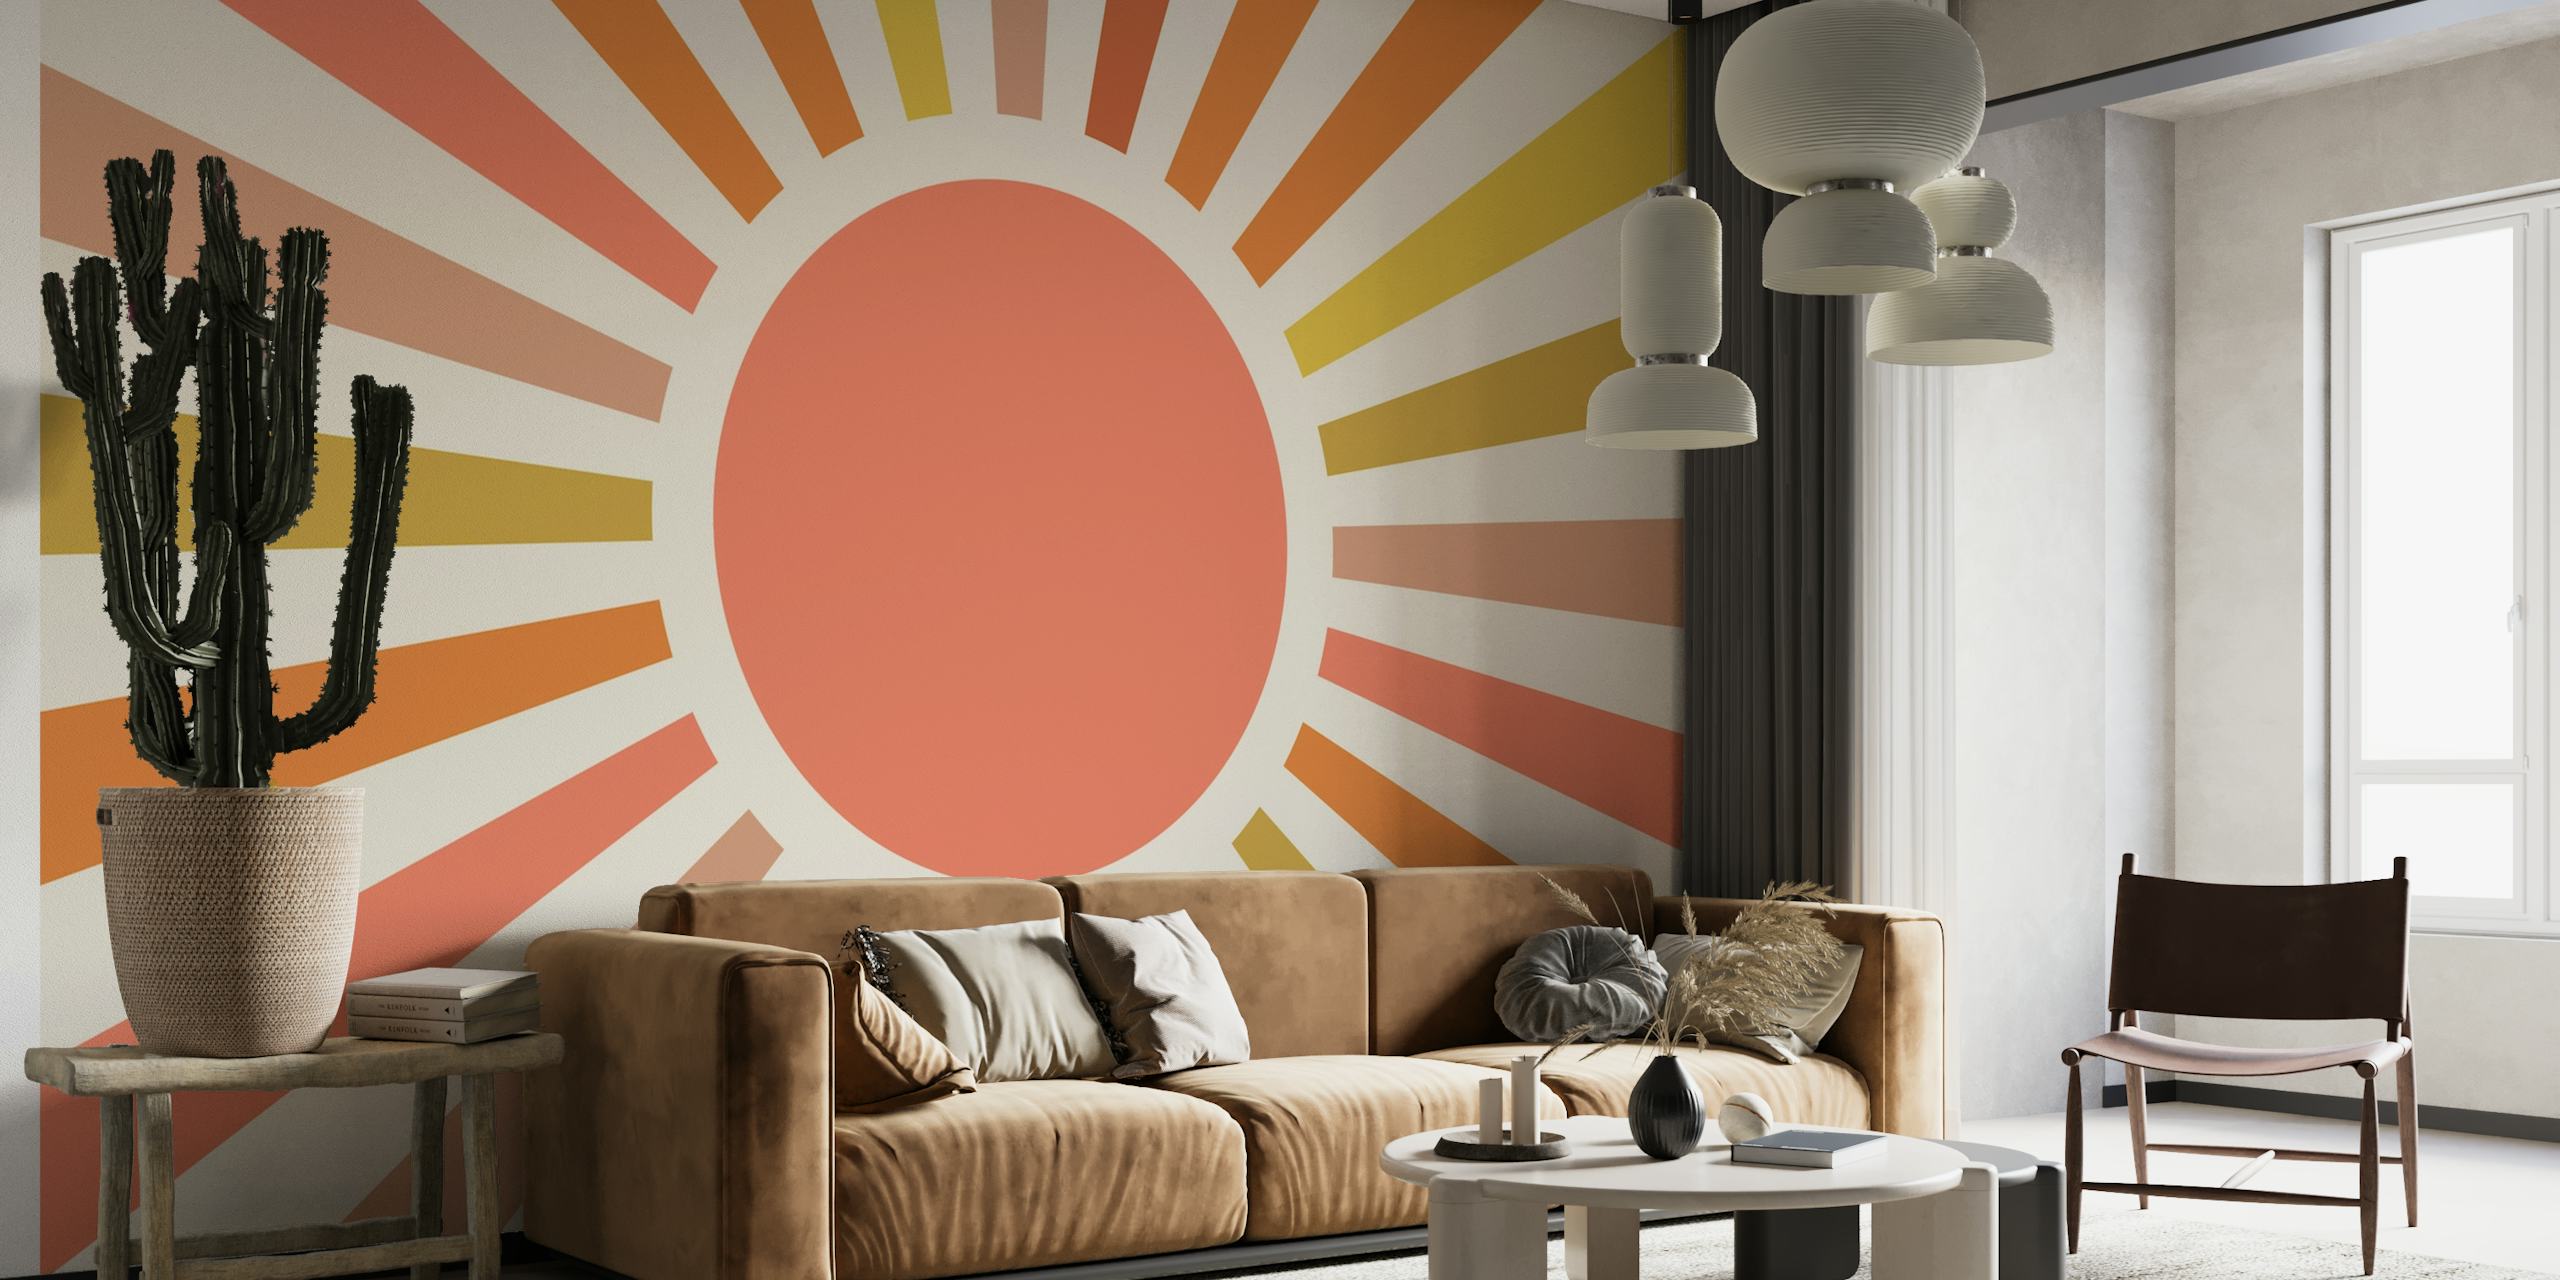 Sunrise Sunbeams wallpaper